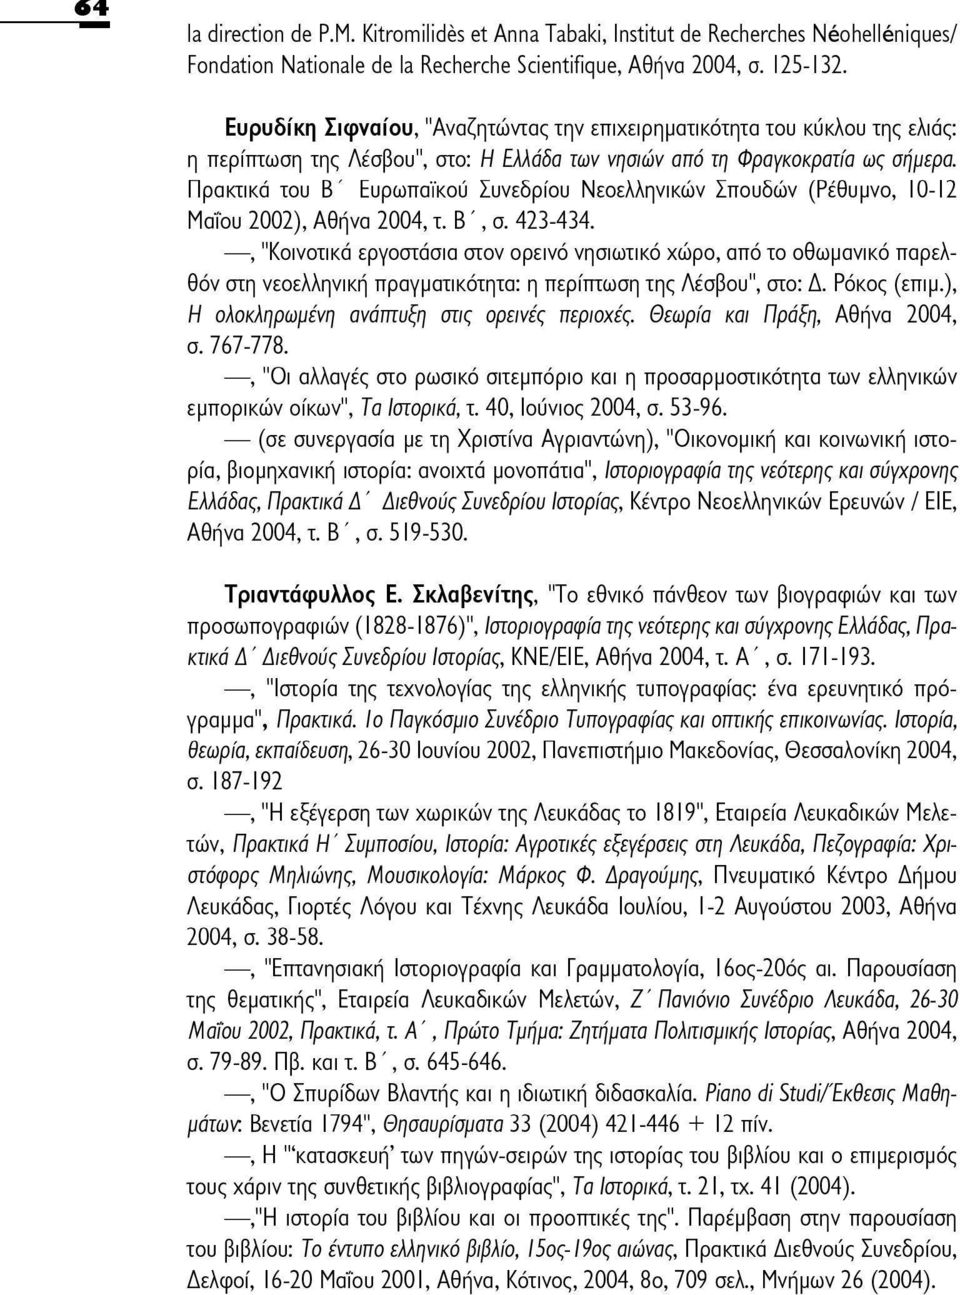 Πρακτικά του Β' Ευρωπαϊκού Συνεδρίου Νεοελληνικών Σπουδών (Ρέθυμνο, 10-12 Μαΐου 2002), Αθήνα 2004, τ. Β ', σ. 423-434.